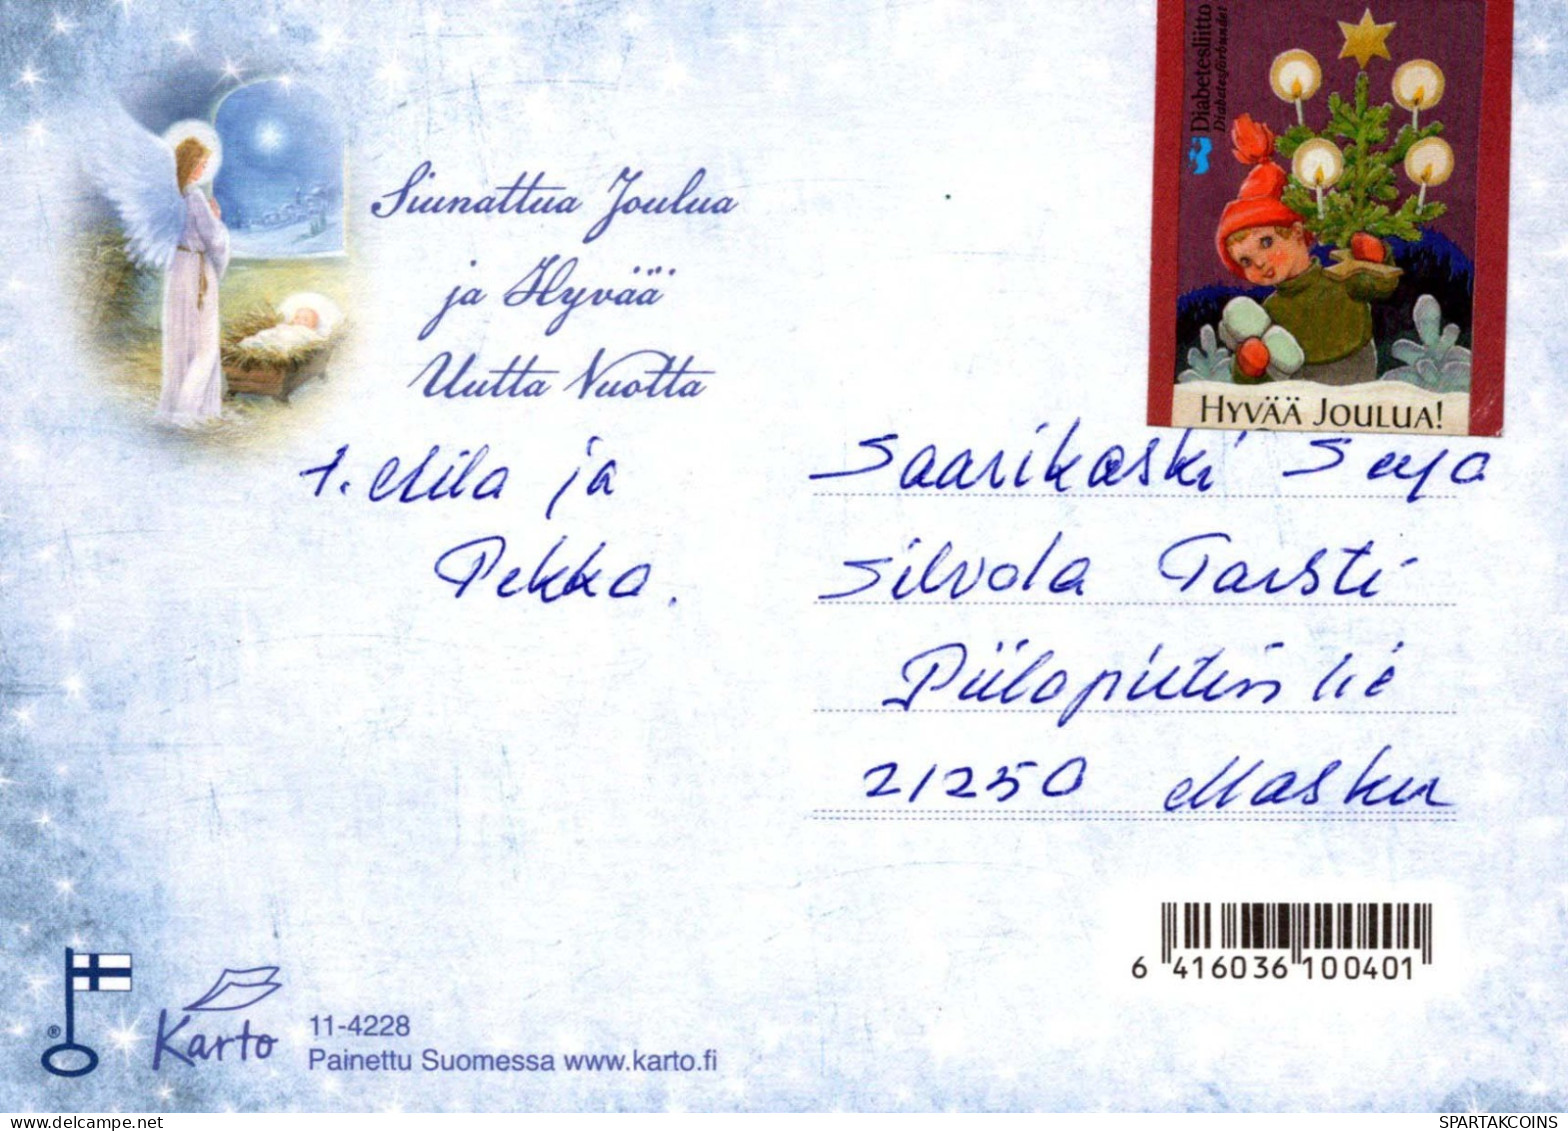 ANGE Noël Bébé JÉSUS Vintage Carte Postale CPSM #PBP440.A - Angels